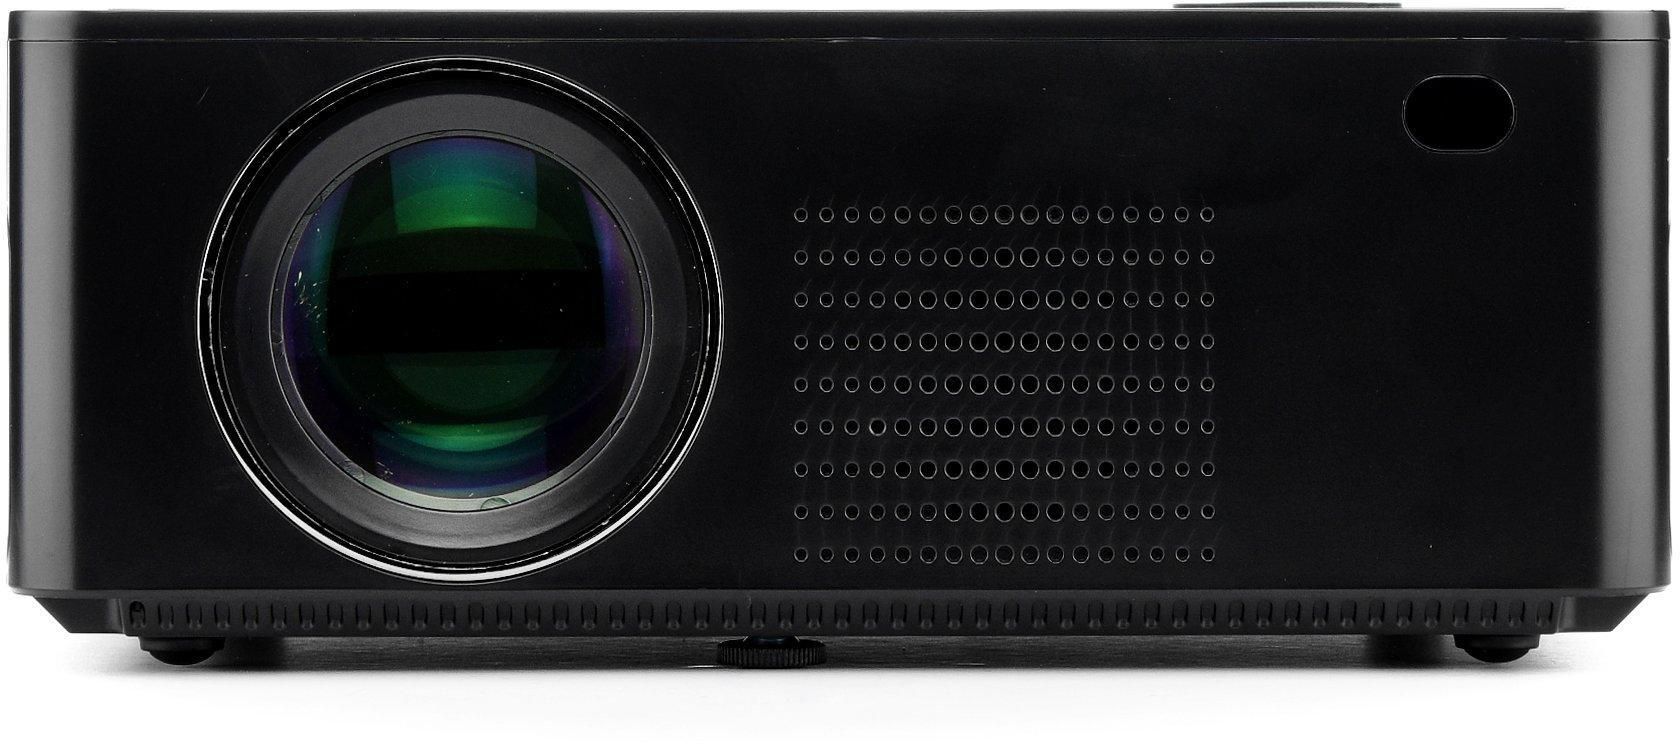 DATAZONE 4004 mini HD Projector w/ Built-in speaker, Black